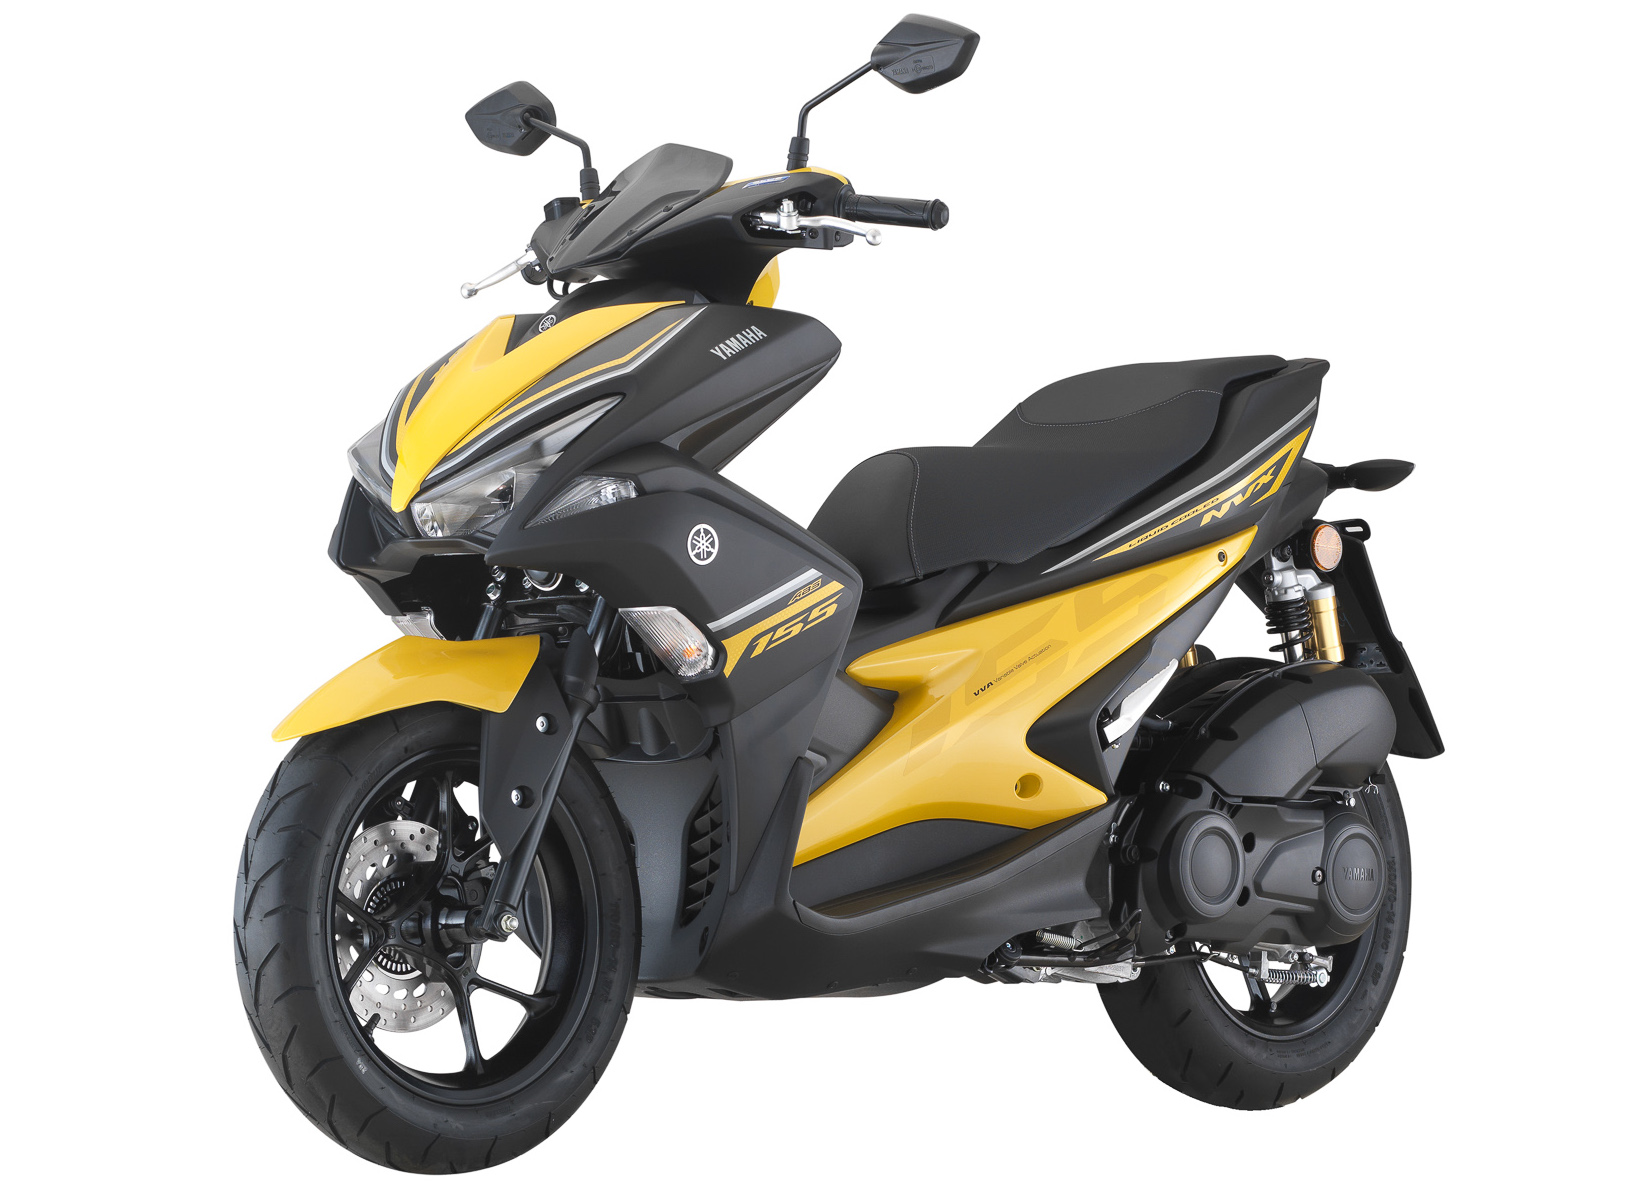 Yamaha Nvx Spec Malaysia / Yamaha nvx 2021, malaysia price, specs ...